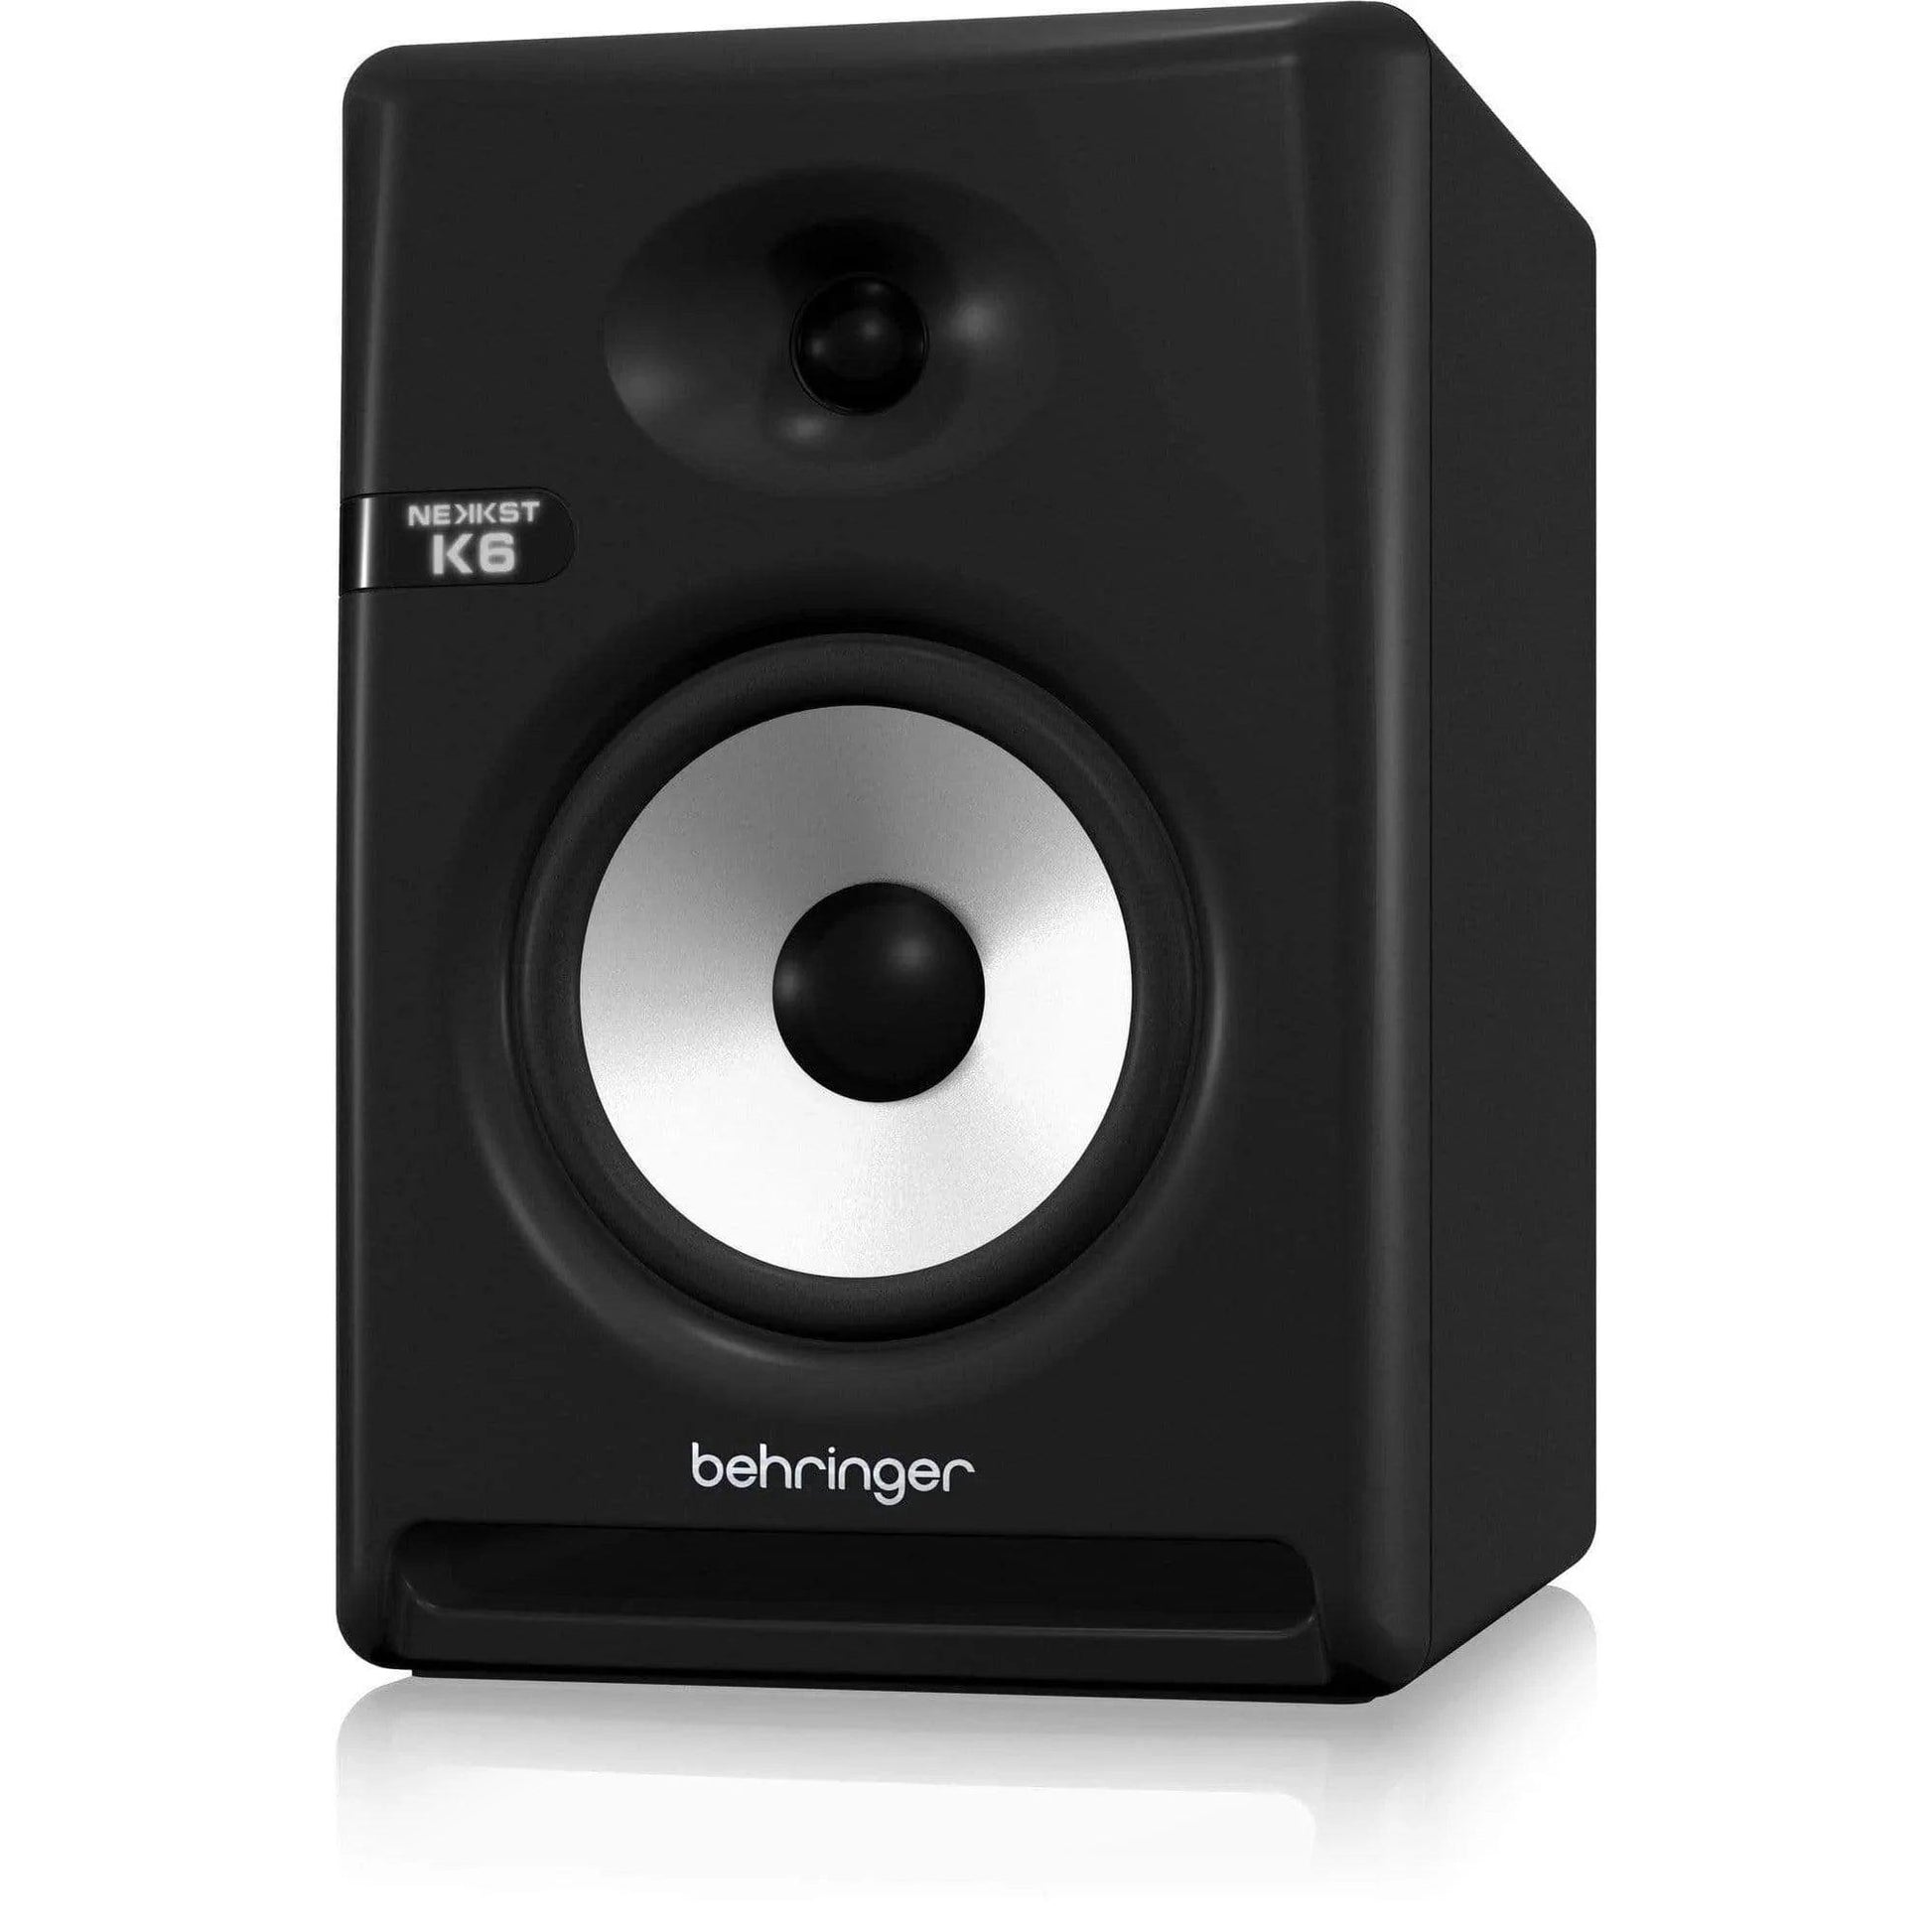 Behringer NEKKST K6 Studio Monitor (1Pc)